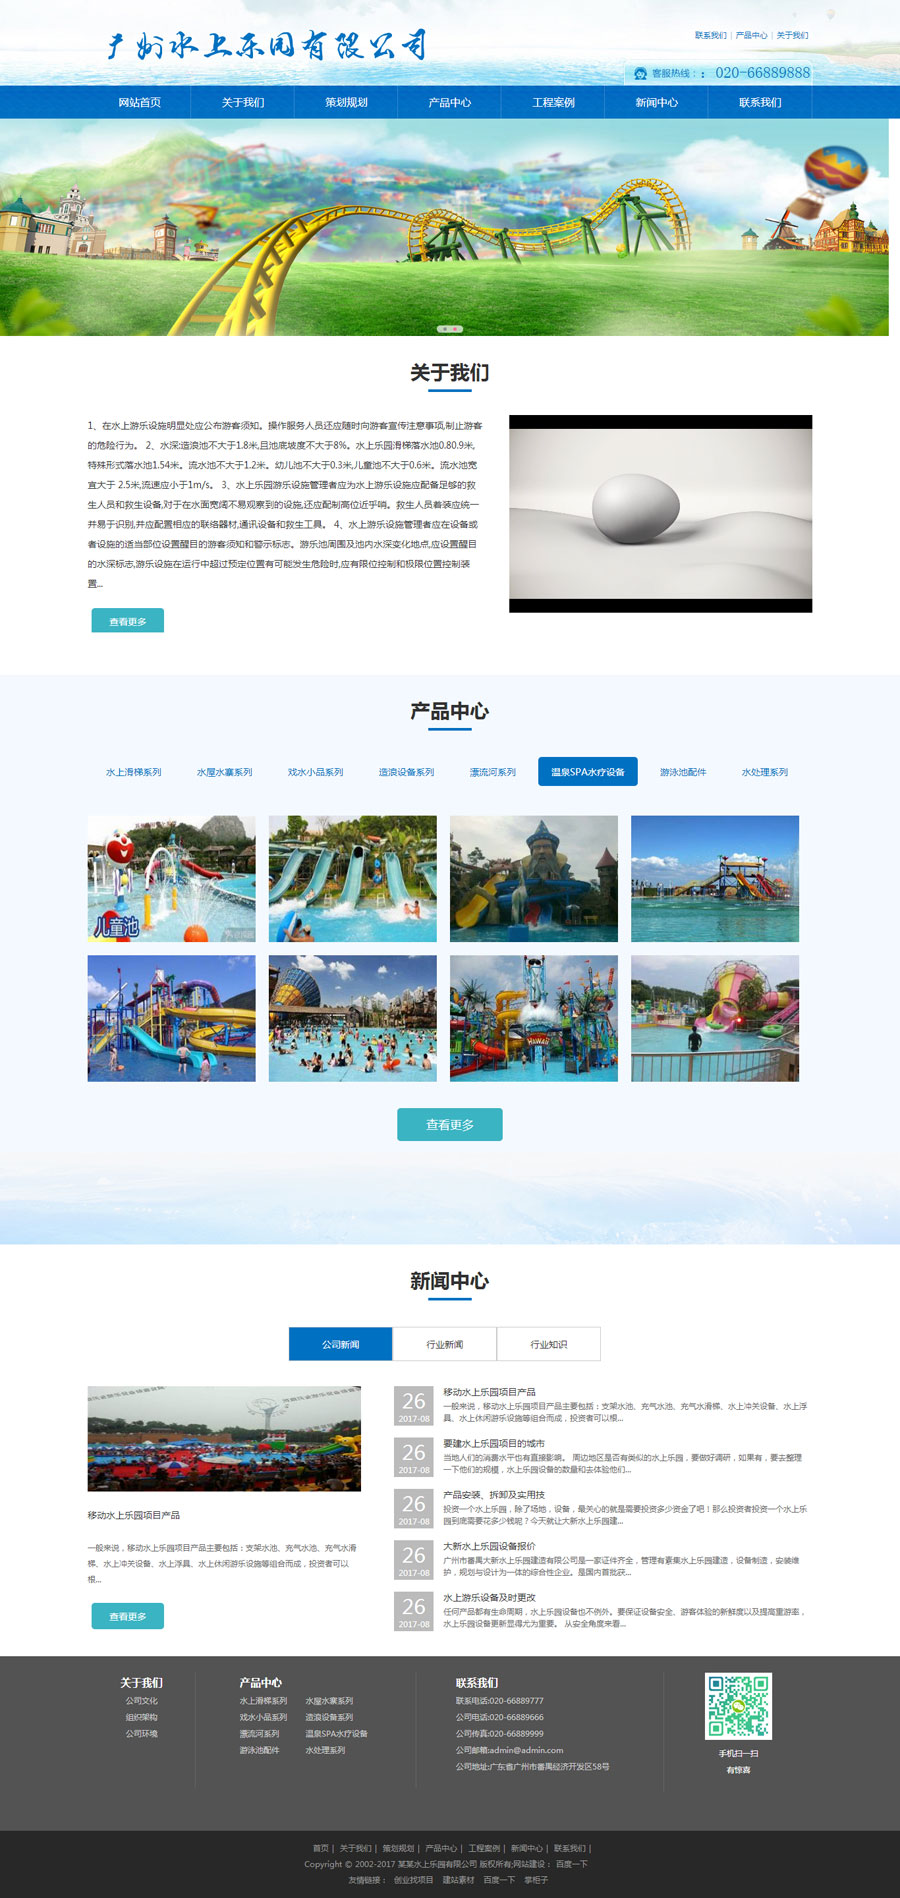 响应式游乐场水上乐园设备类展示型网站(图1)